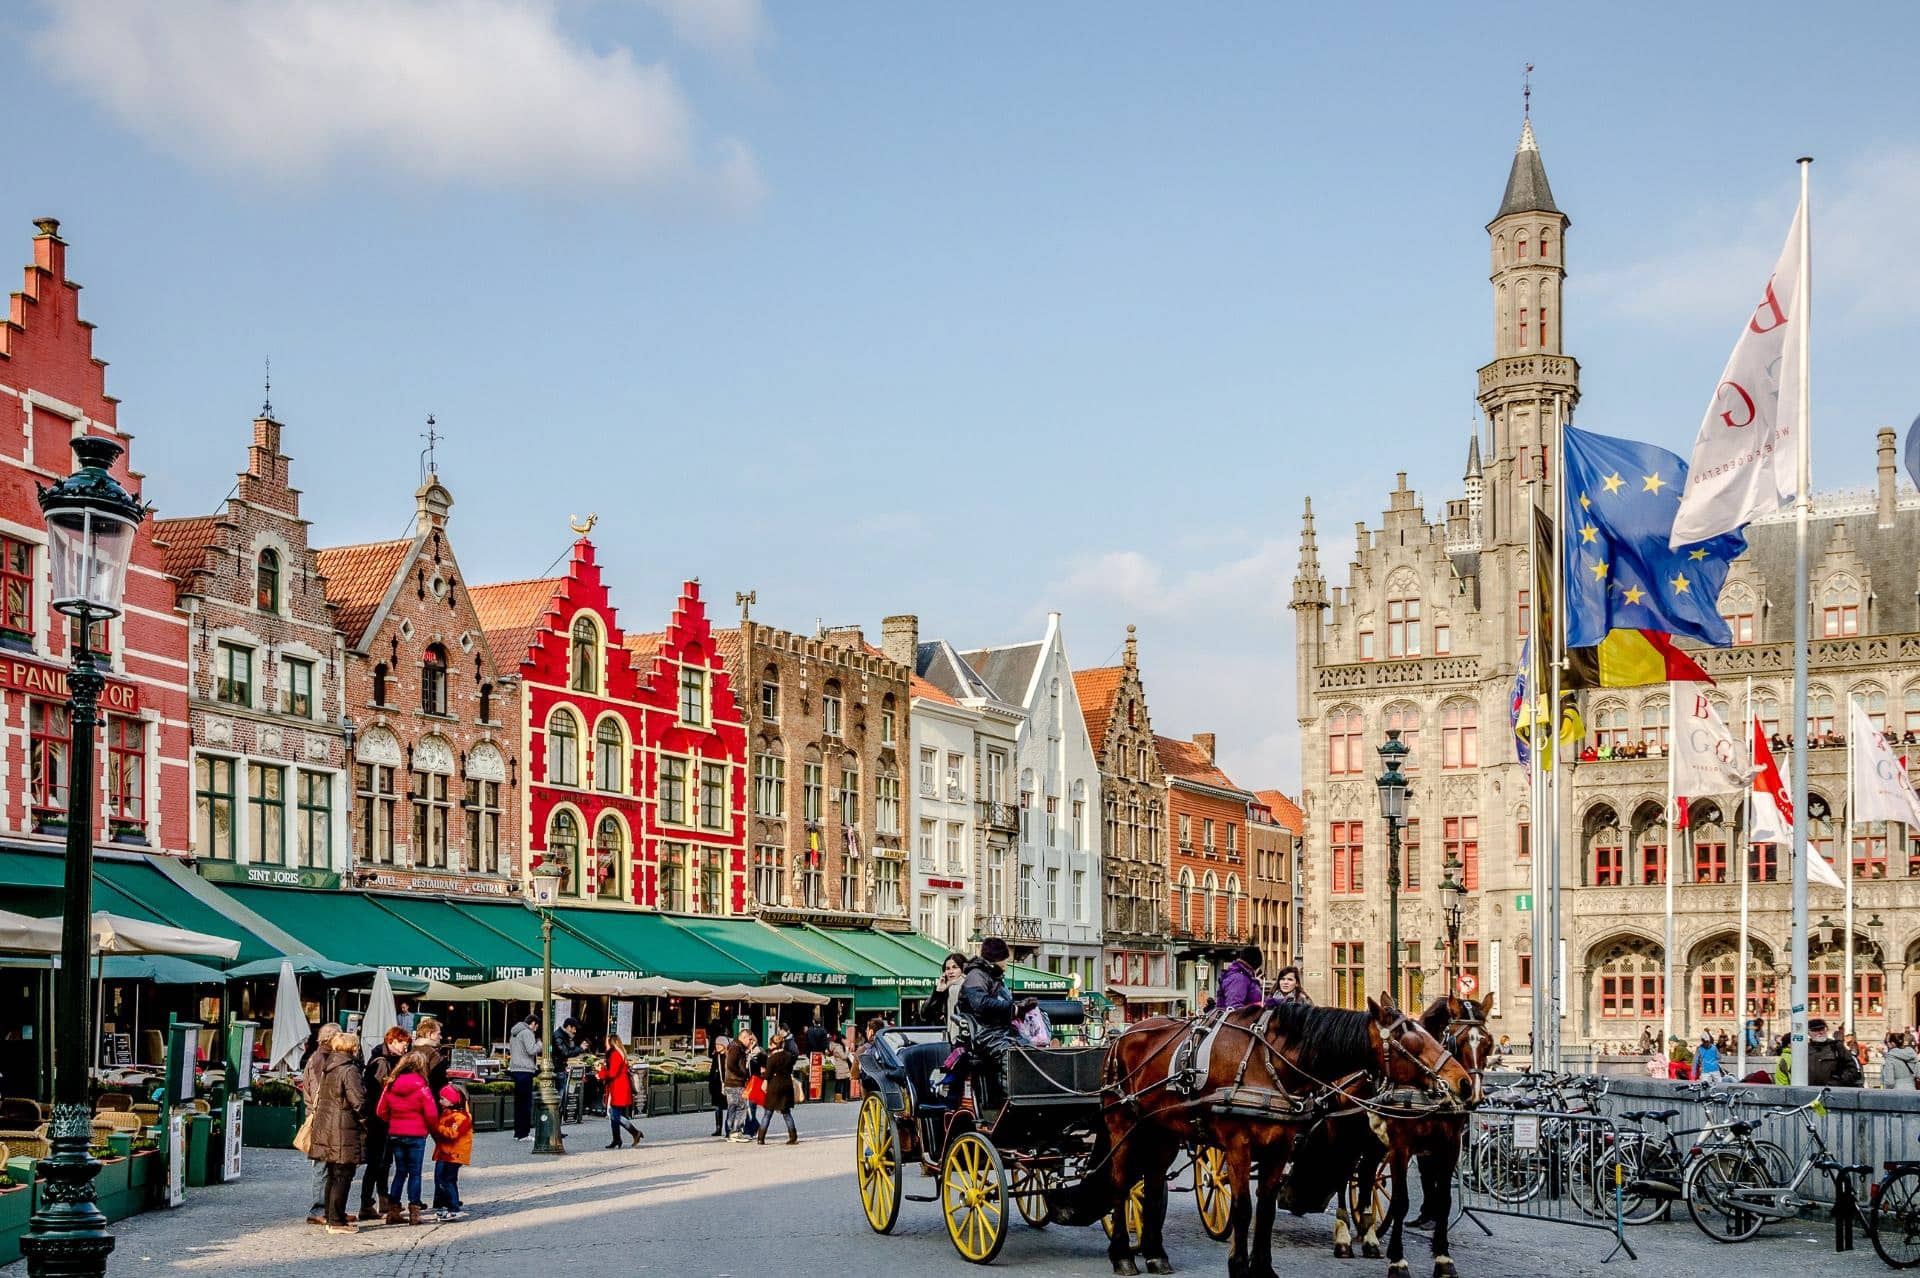 Brugge (of Brugge) is lang beschouwd als een van 's werelds grootste steden, in feite is de hele stad erkend als werelderfgoed door UNESCO. Terwijl u in Brugge bent, kunt u lokale bezienswaardigheden verkennen zoals het Brugge Plein (een must see) en de eeuwenoude architectuur verkennen op korte reisafstand van uw hotel in Brugge. Wie kan vergeten om in uw hotelaccommodatie in Brugge een bezoek te brengen aan de plaatselijke brouwerijen? Maak gebruik van de dagelijkse rondleidingen en ervaar de speciale bieren tijdens een bierproeverij. Boek altijd direct tijdens het boeken van uw hotelaccommodatie in Brugge om onze beste tariefgarantie en exclusieve toegang tot onze loyaliteitsclub te krijgen. Boek nu!